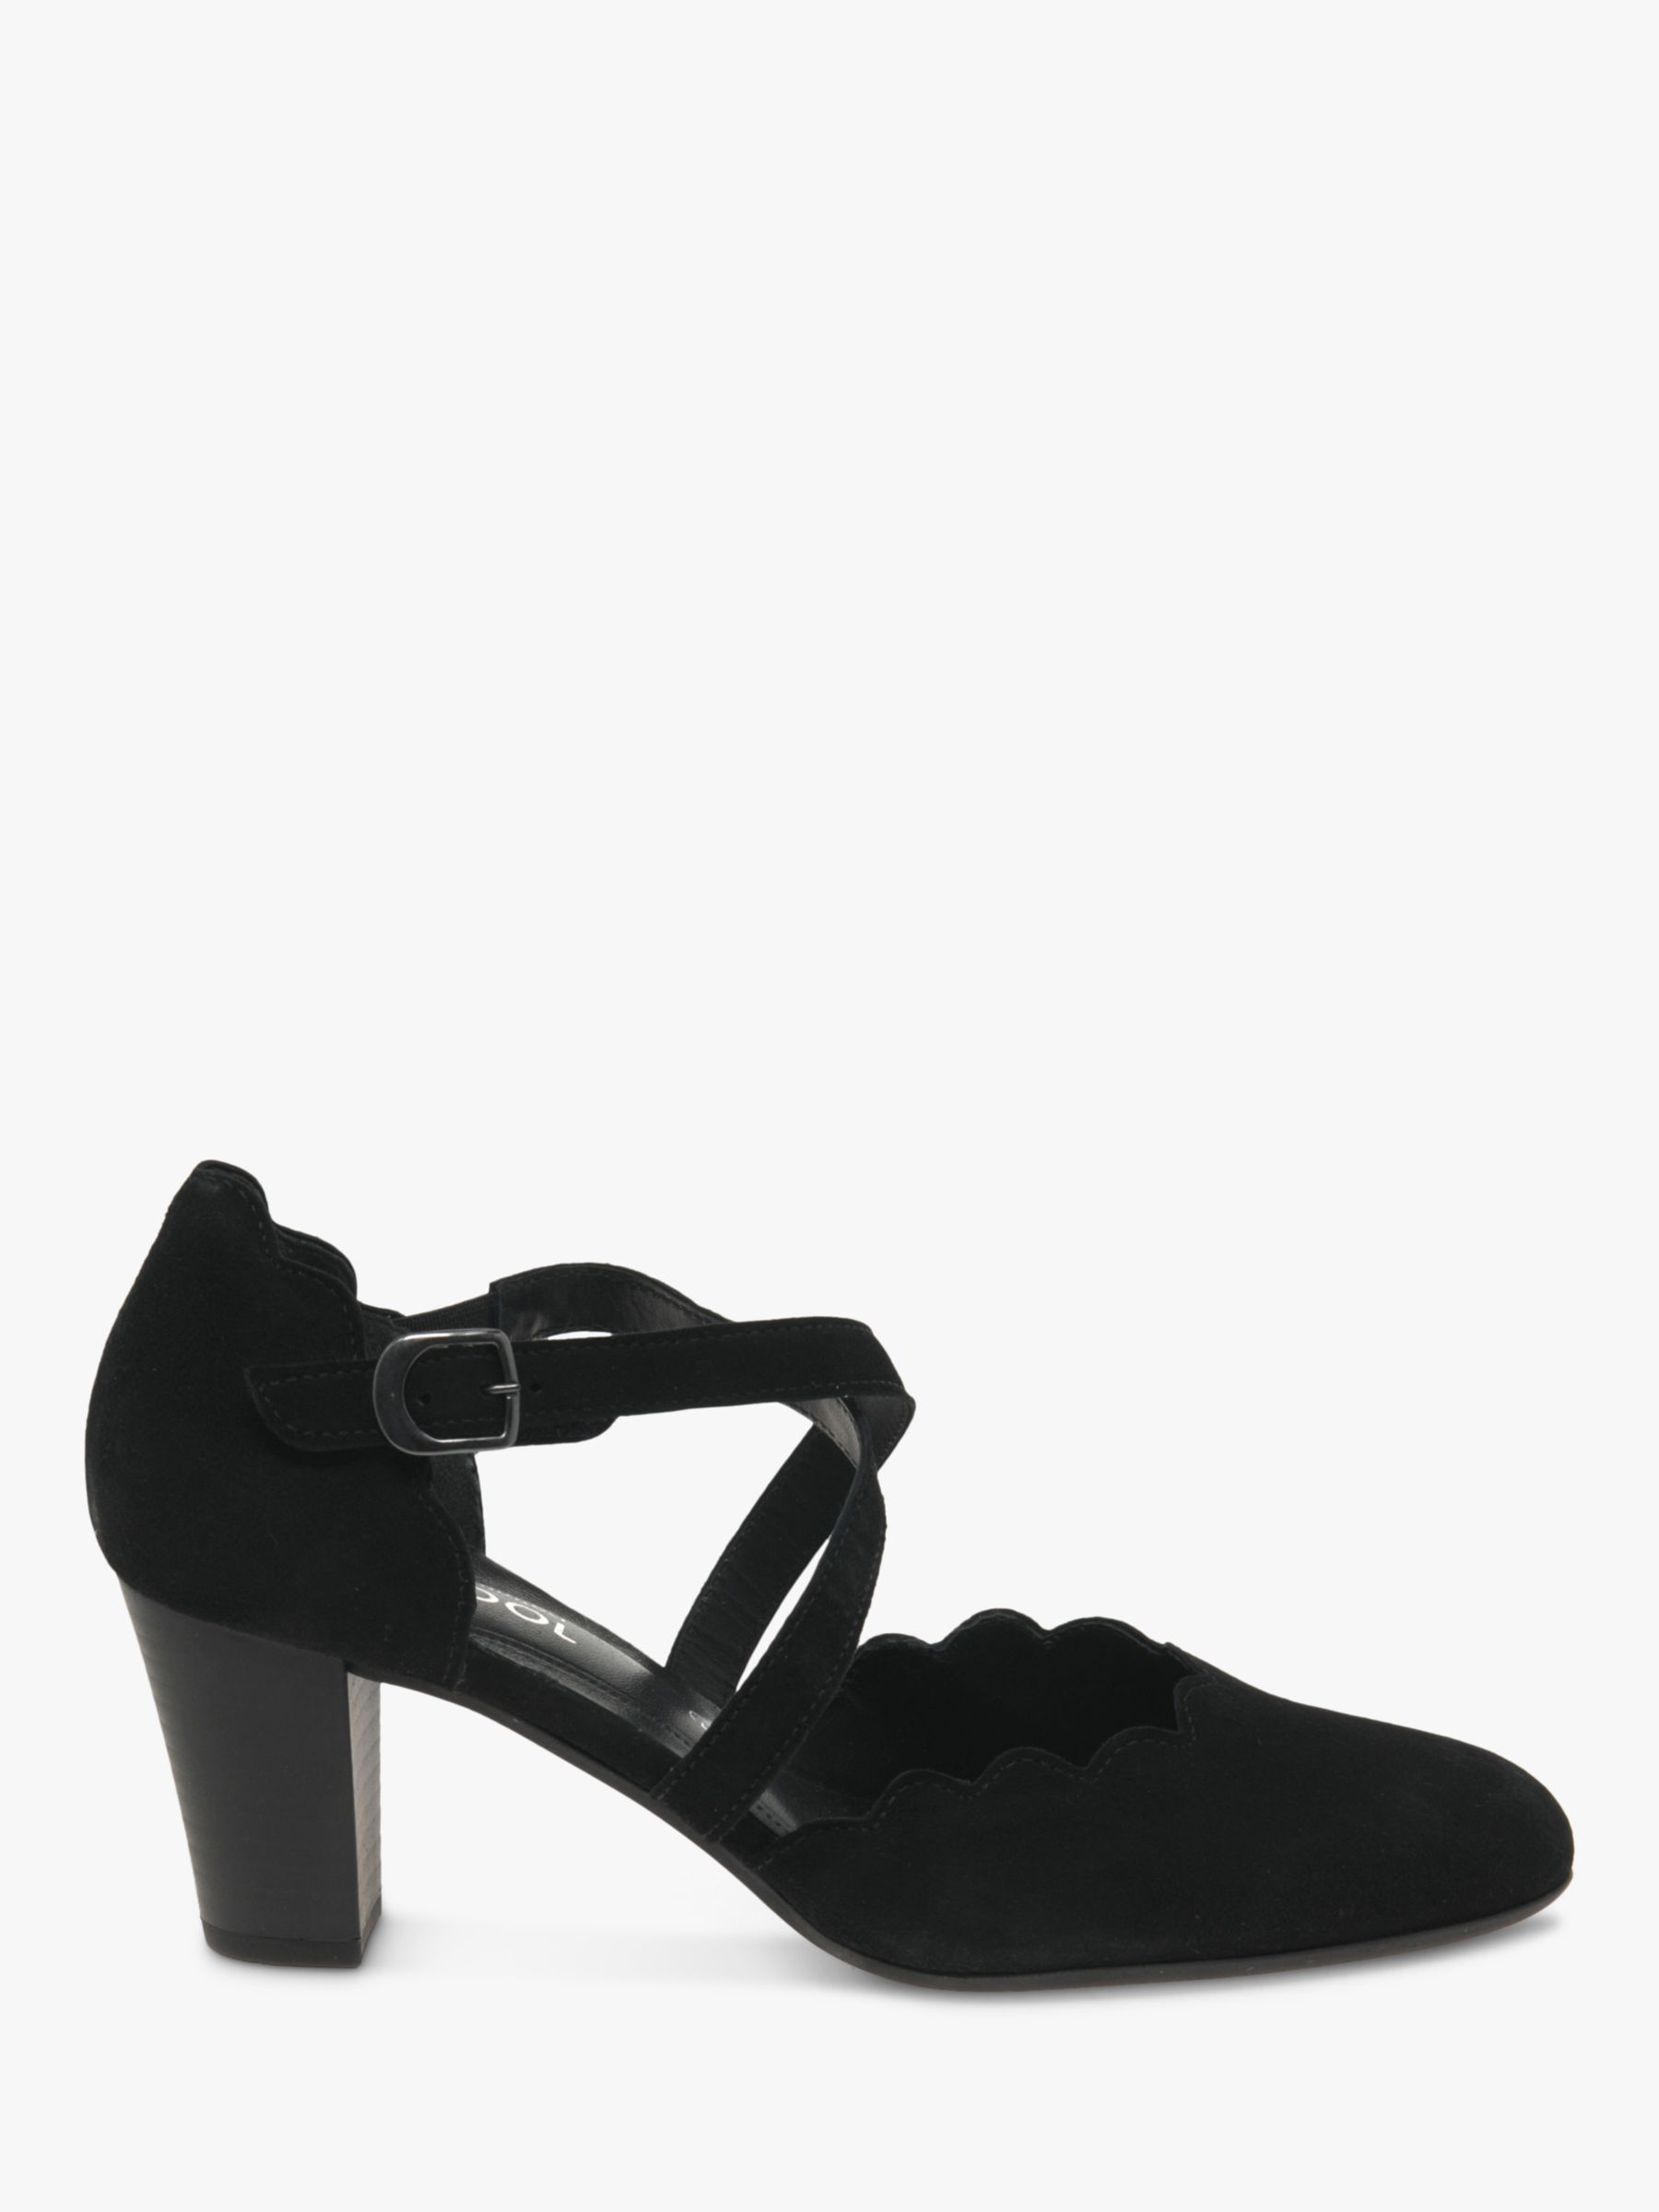 gabor black court shoes